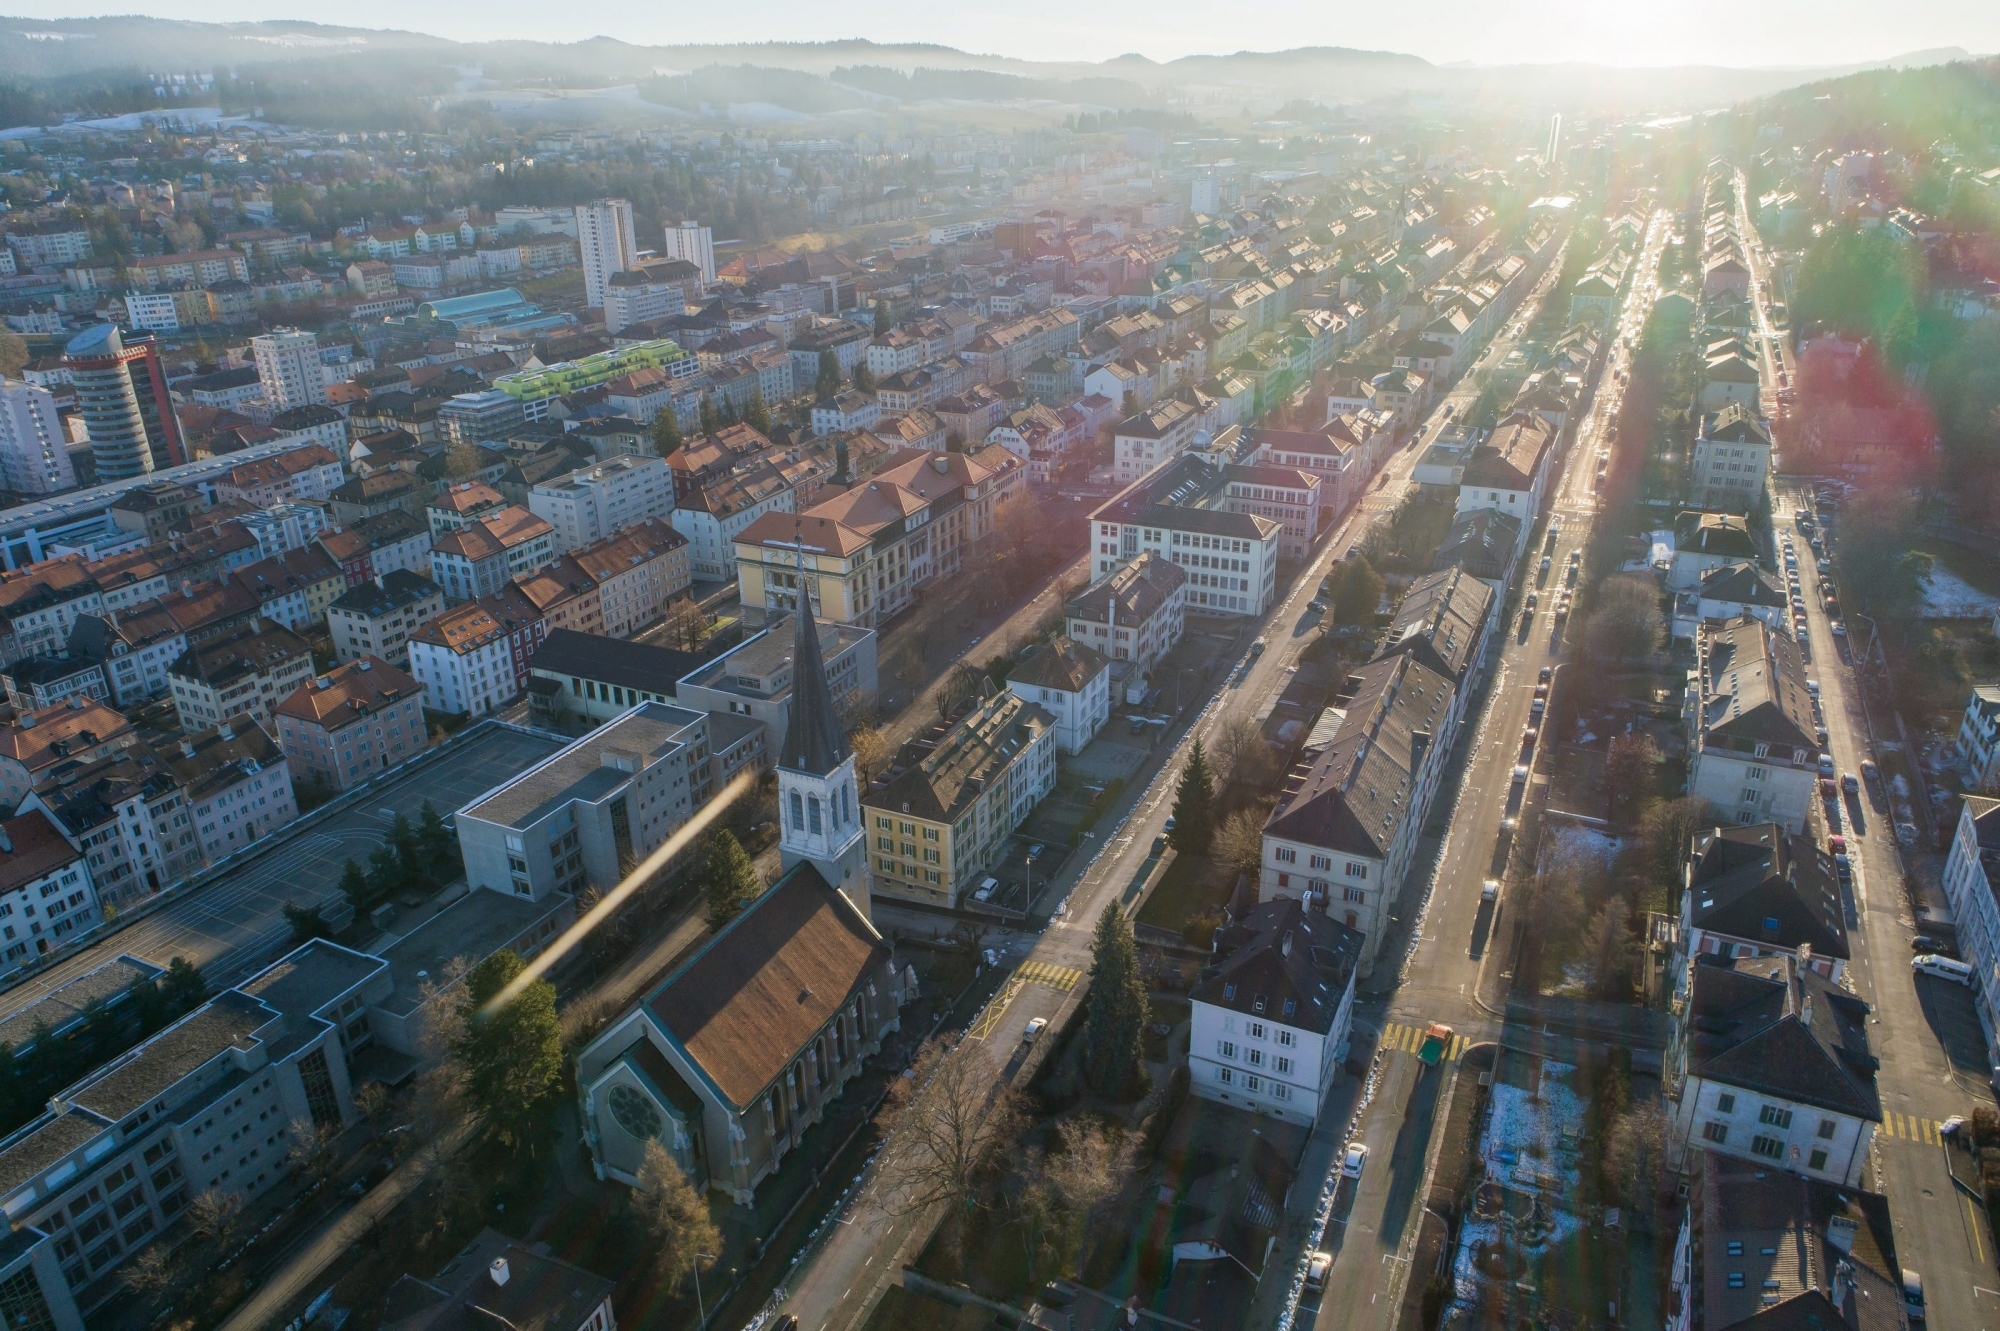 Le projet «La Chaux-de-Fonds» – Capitale culturelle suisse» vise à faire de la Métropole horlogère la première ville porteuse du label «Capital culturelle suisse» (photo d'illustration).